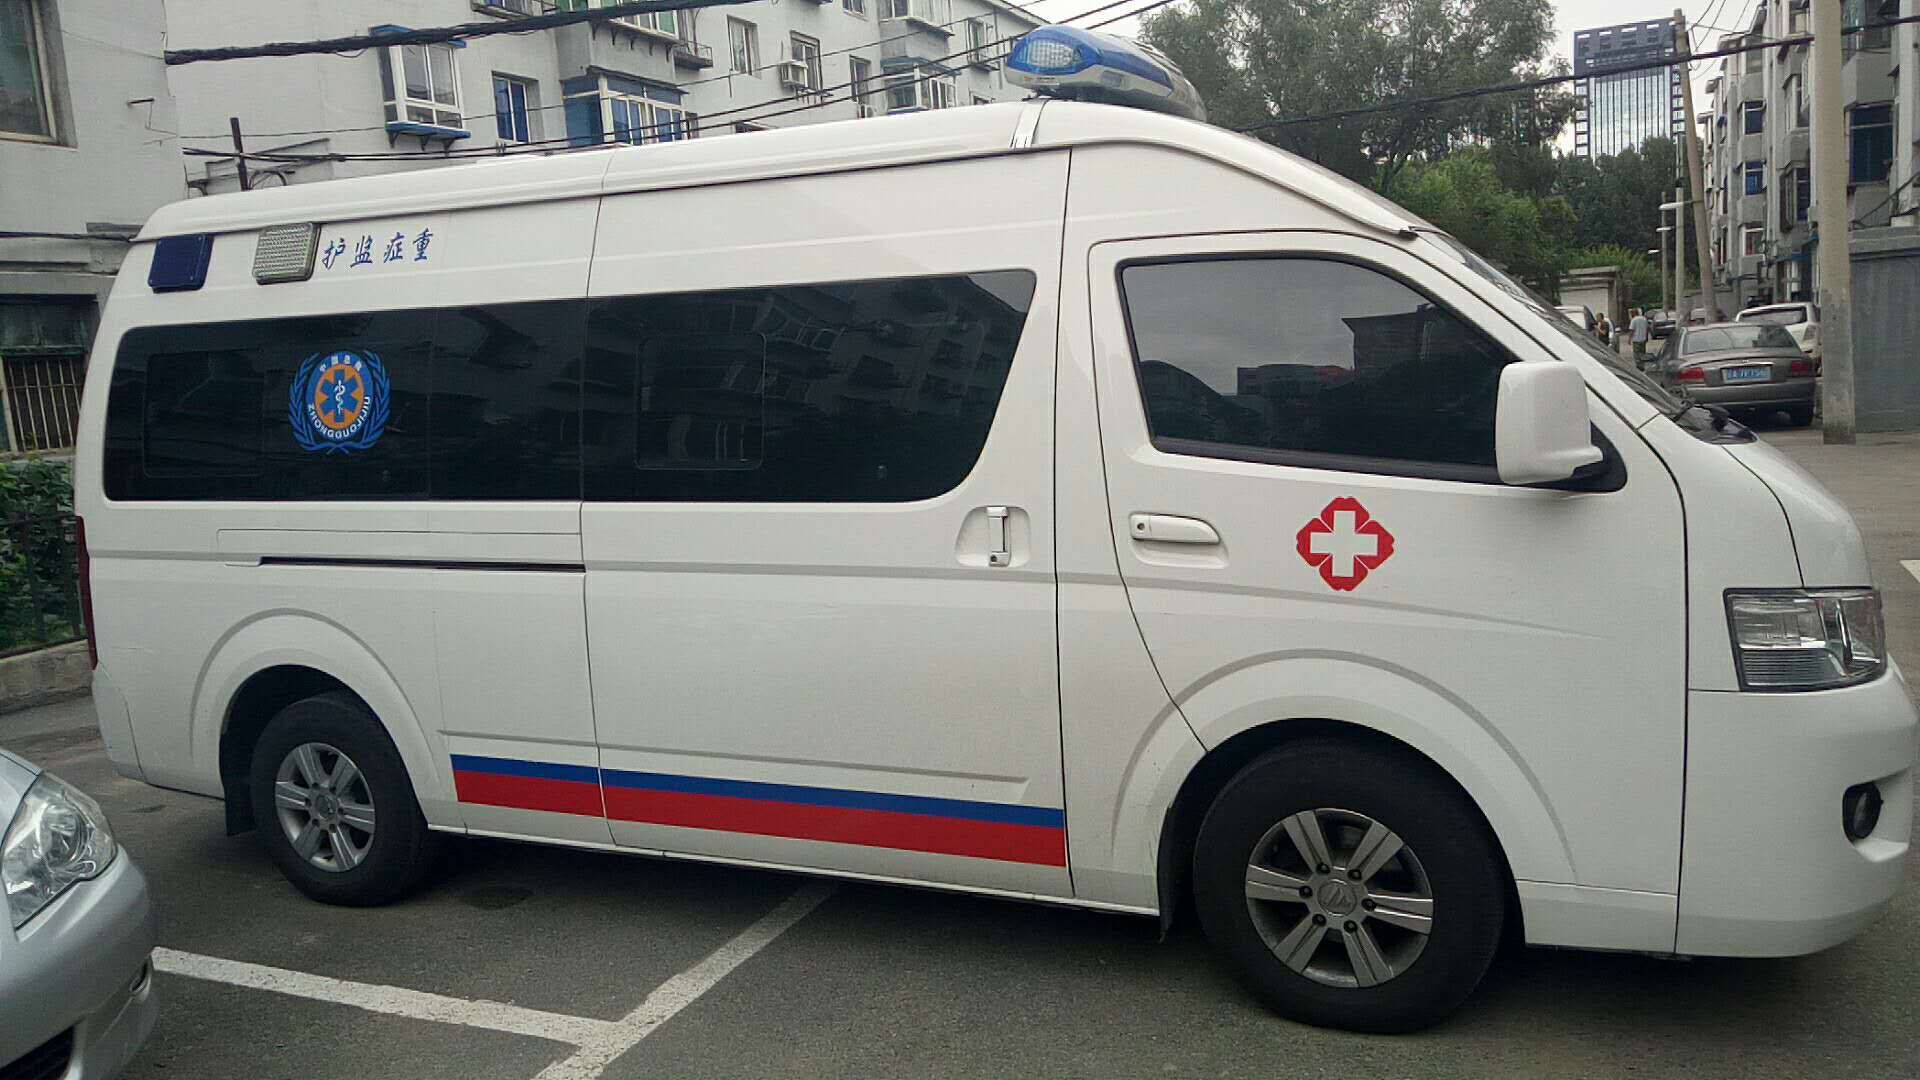 武汉救护车出租活动保障24小时联系电话